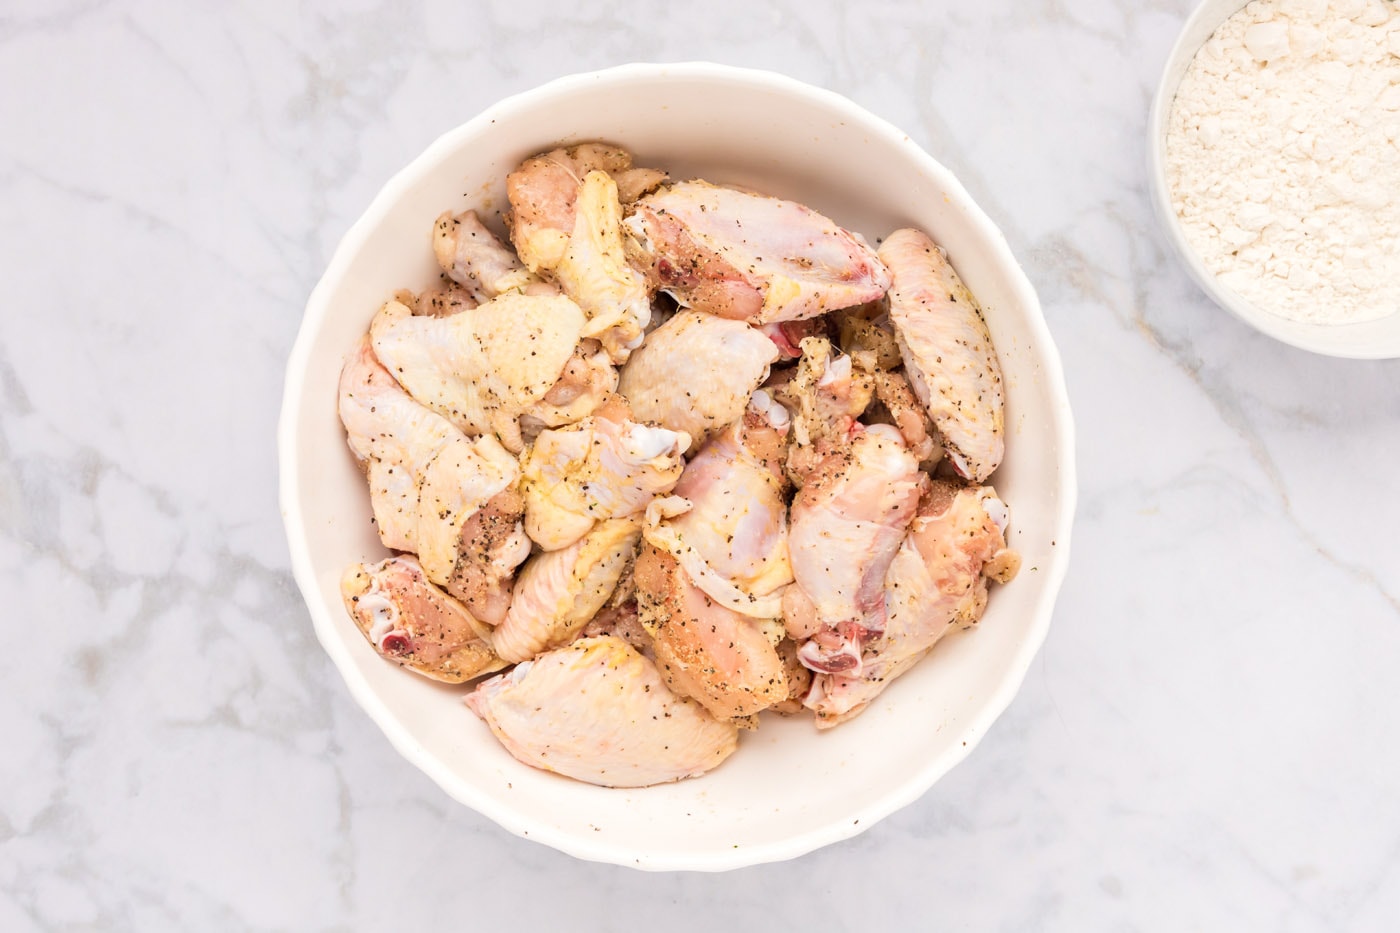 seasoned chicken wings in a bowl